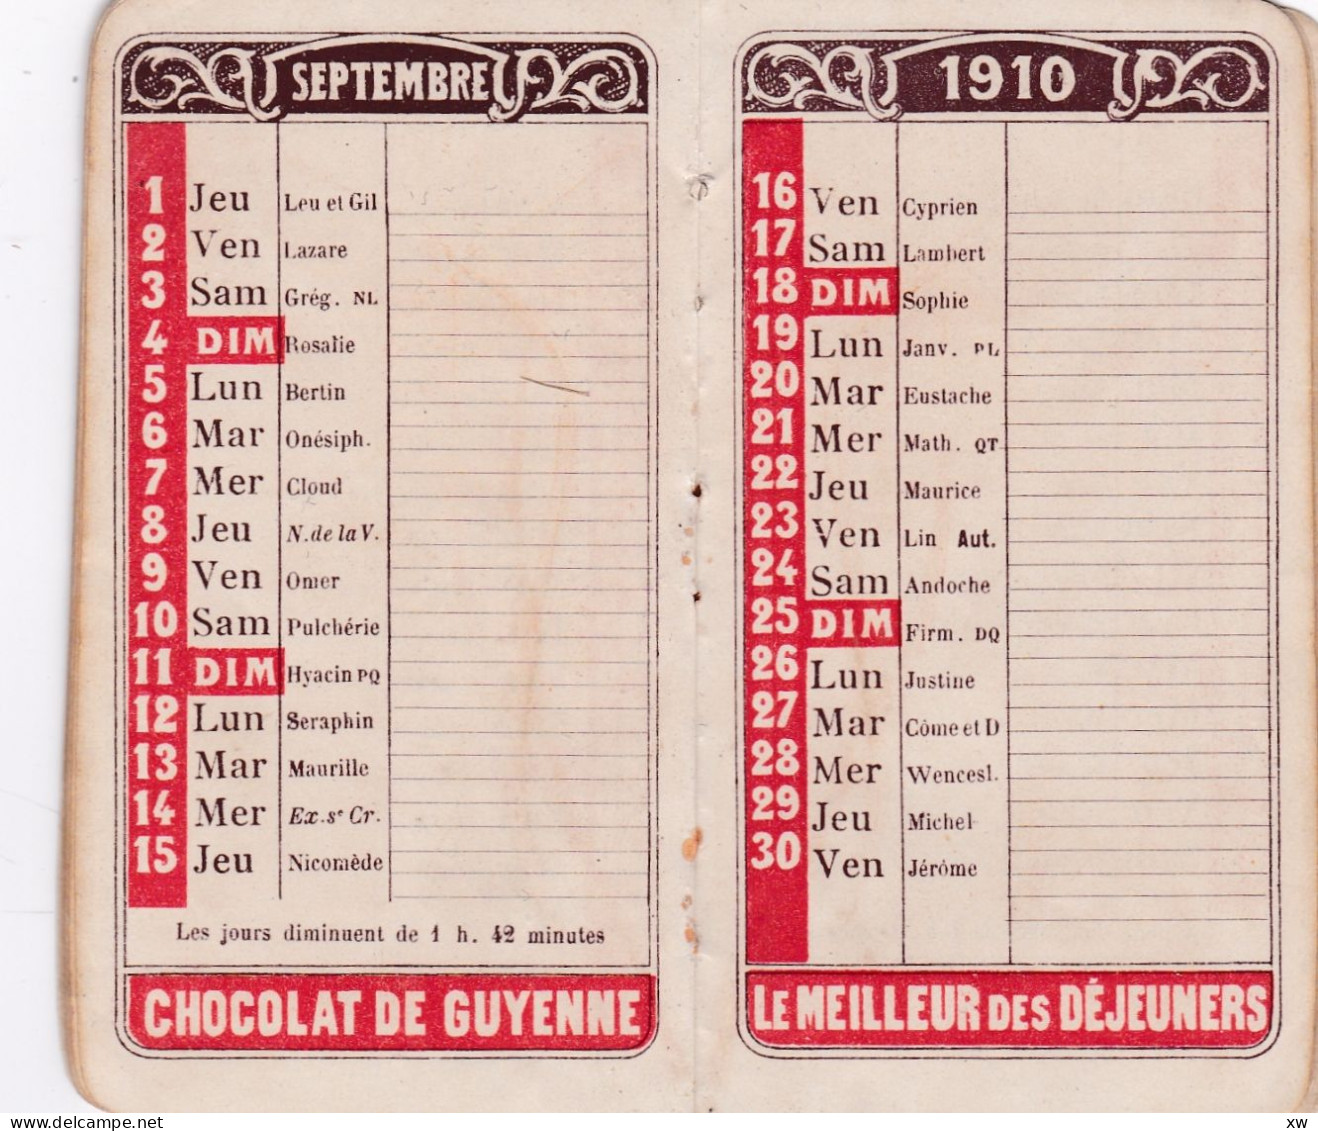 AGENDA MEMENTO 1910 offert aux acheteurs du Chocolat de Guyenne -En vente chez les Pharmaciens A. ROUDEL et Cie-19-05-24